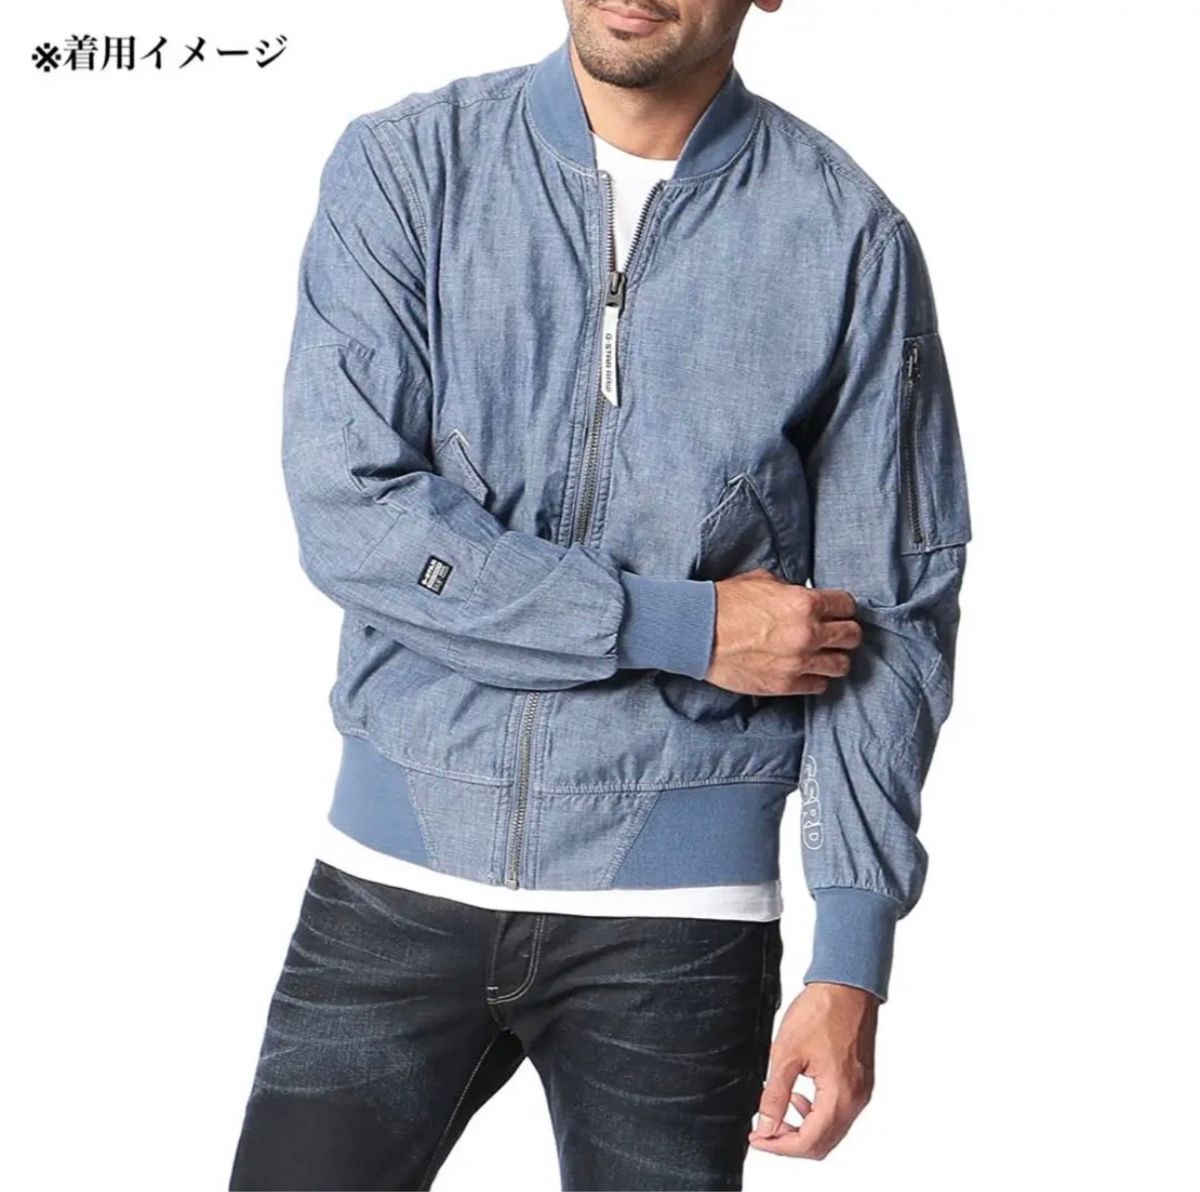 ジースターロゥ G-STAR RAW ブルゾン サイズXS - ブルー 美品 ジャケット-